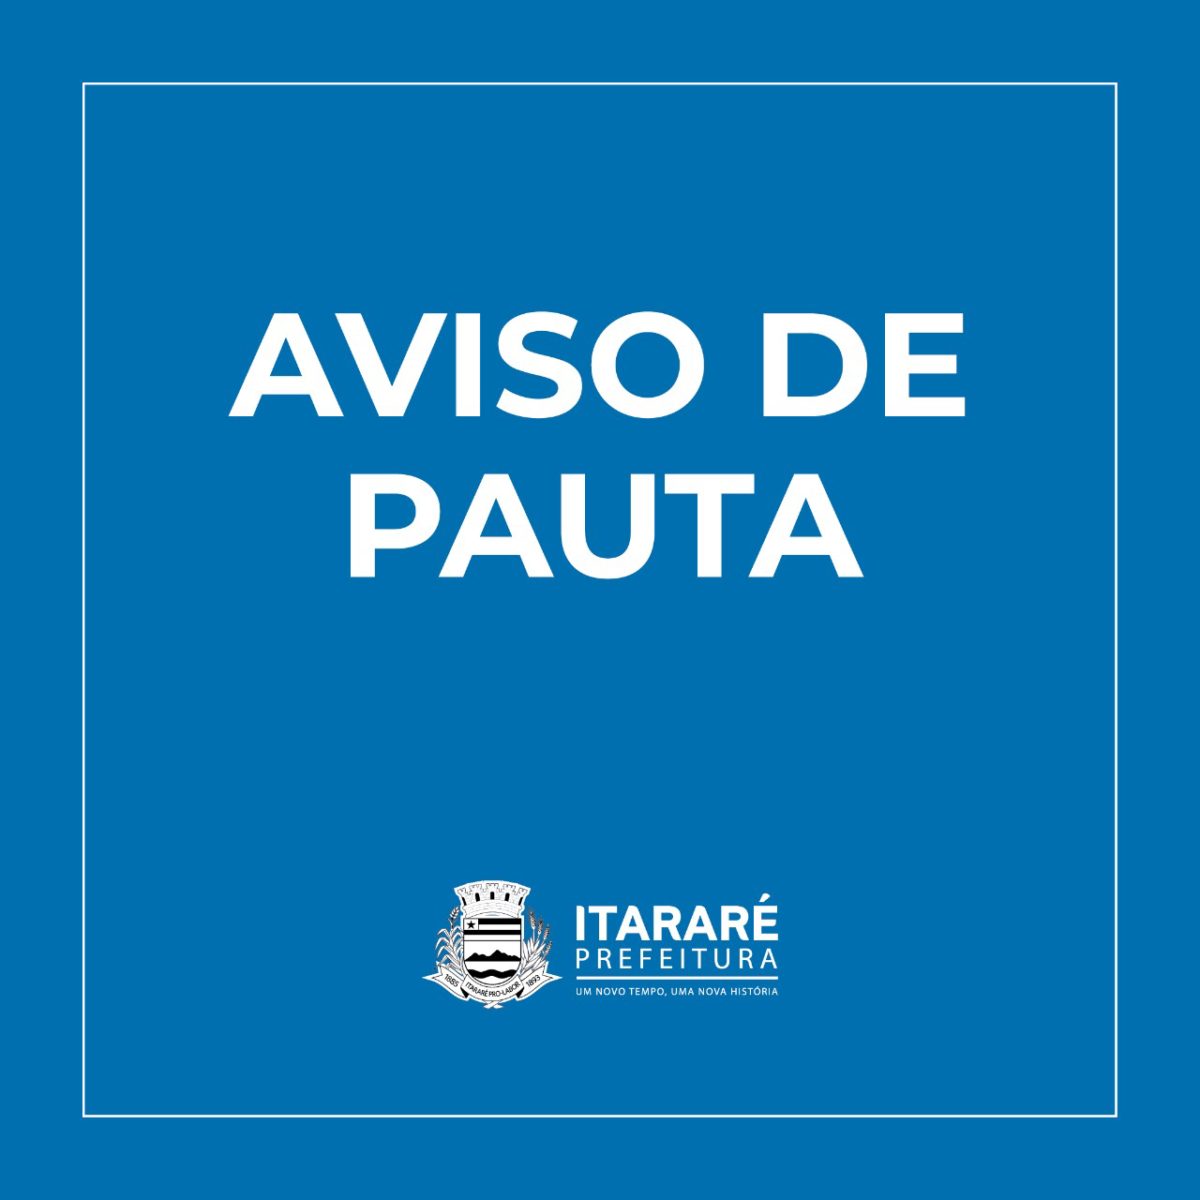 AVISO DE PAUTA: Prefeitura de Itararé (SP) realizará lançamento da pavimentação da rua São Pedro